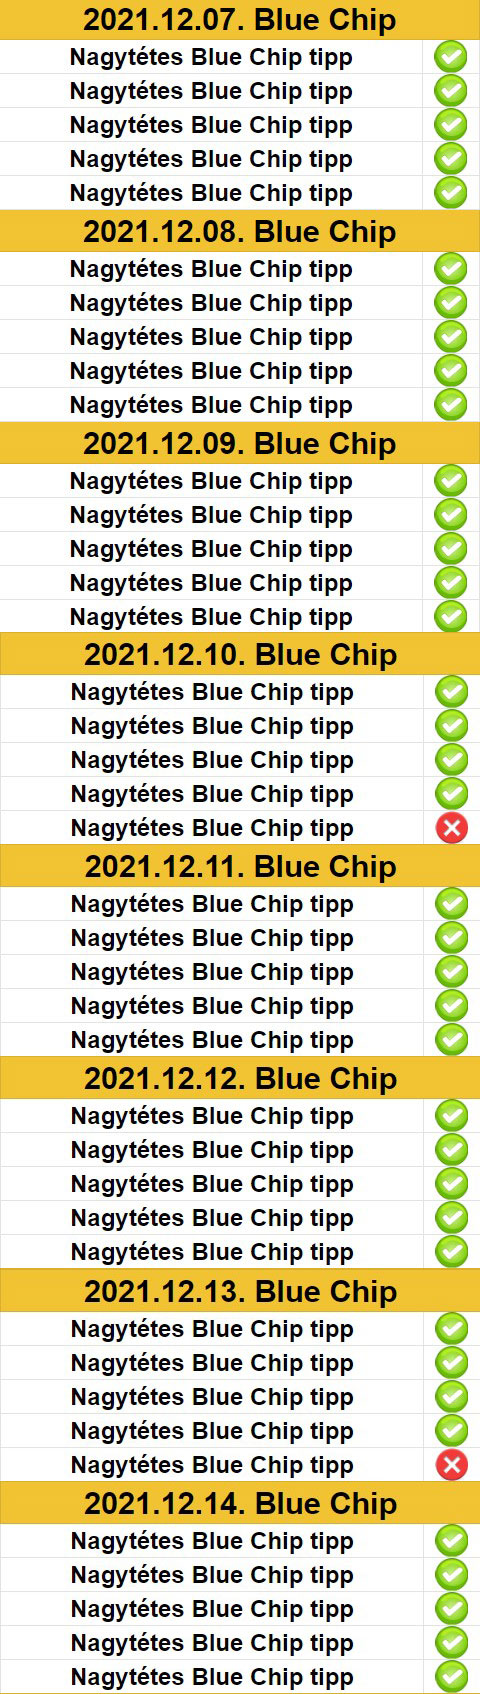 Itt az újabb telitalálatos BLUE CHIP szelvény ötlet!  - Tippmix Tippek 1x2 - Tippmix tippek